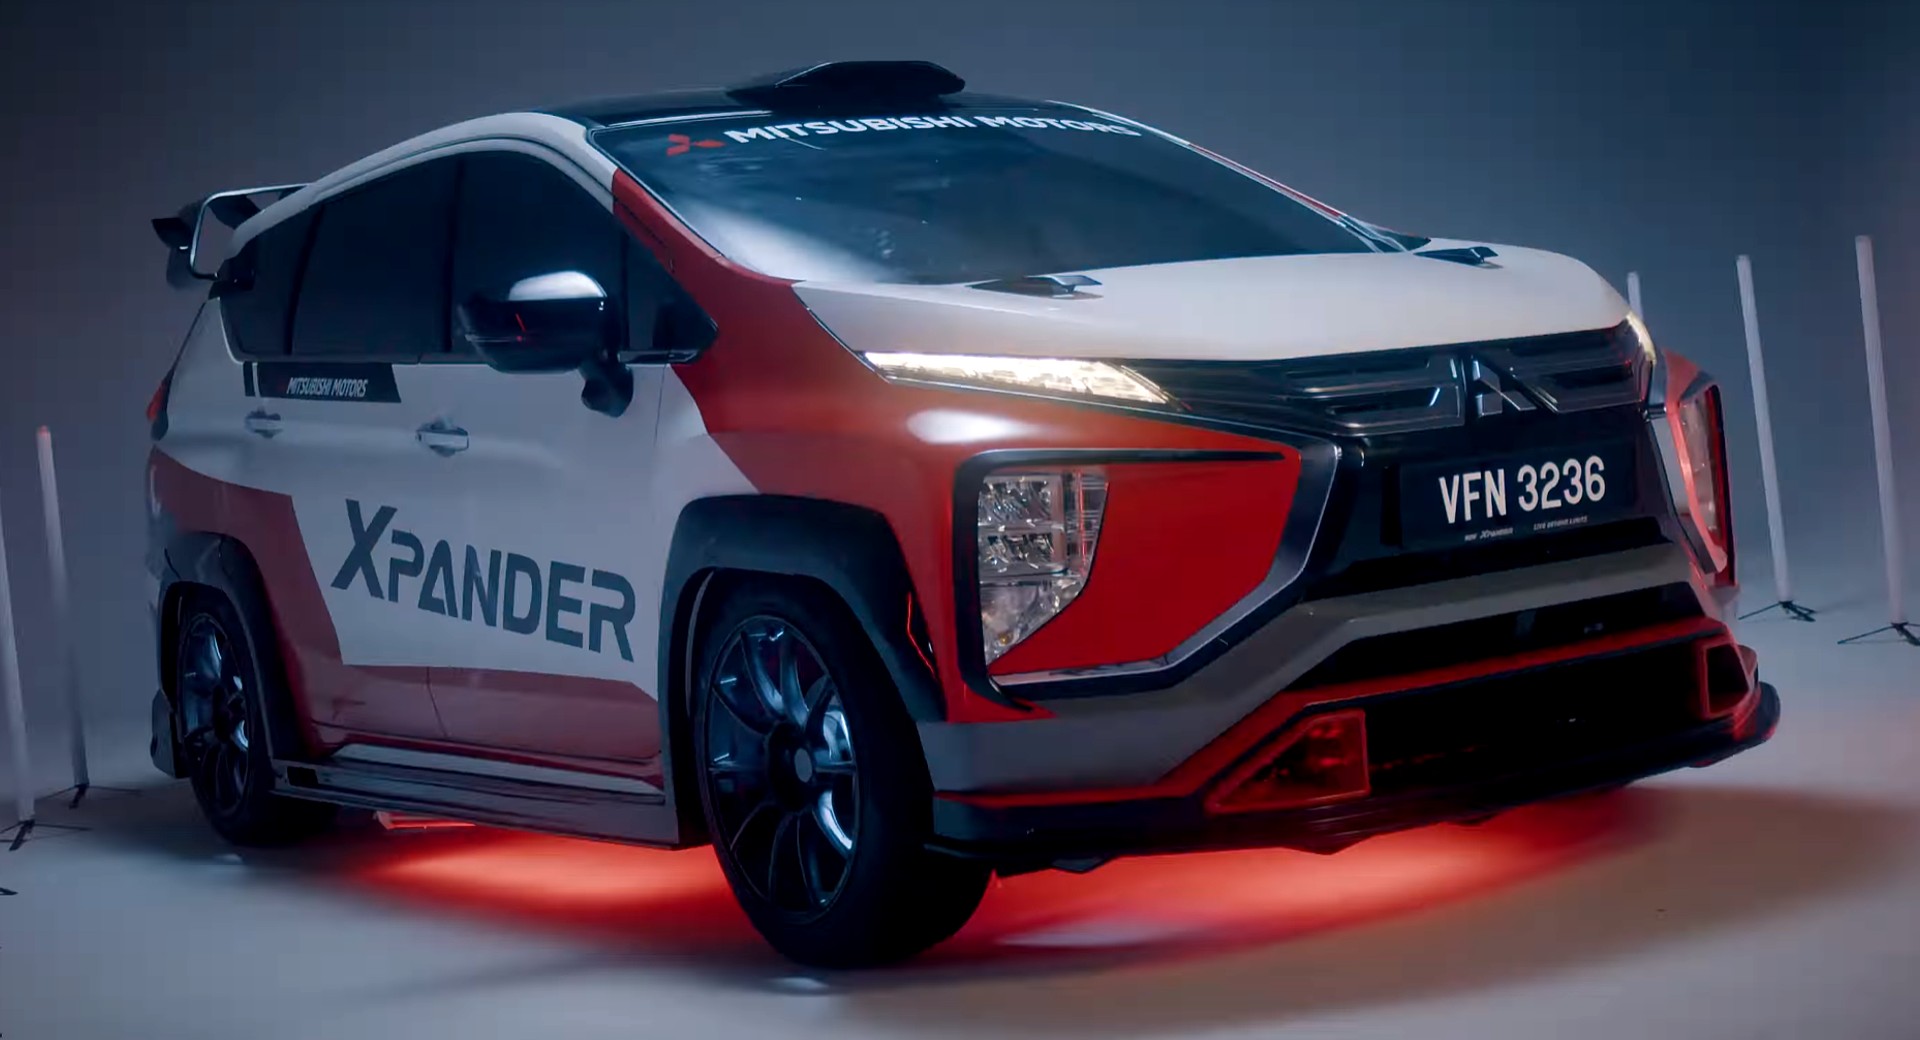 Un Mitsubishi XPander par Speedline Industries veut ressembler à une voiture de rallye